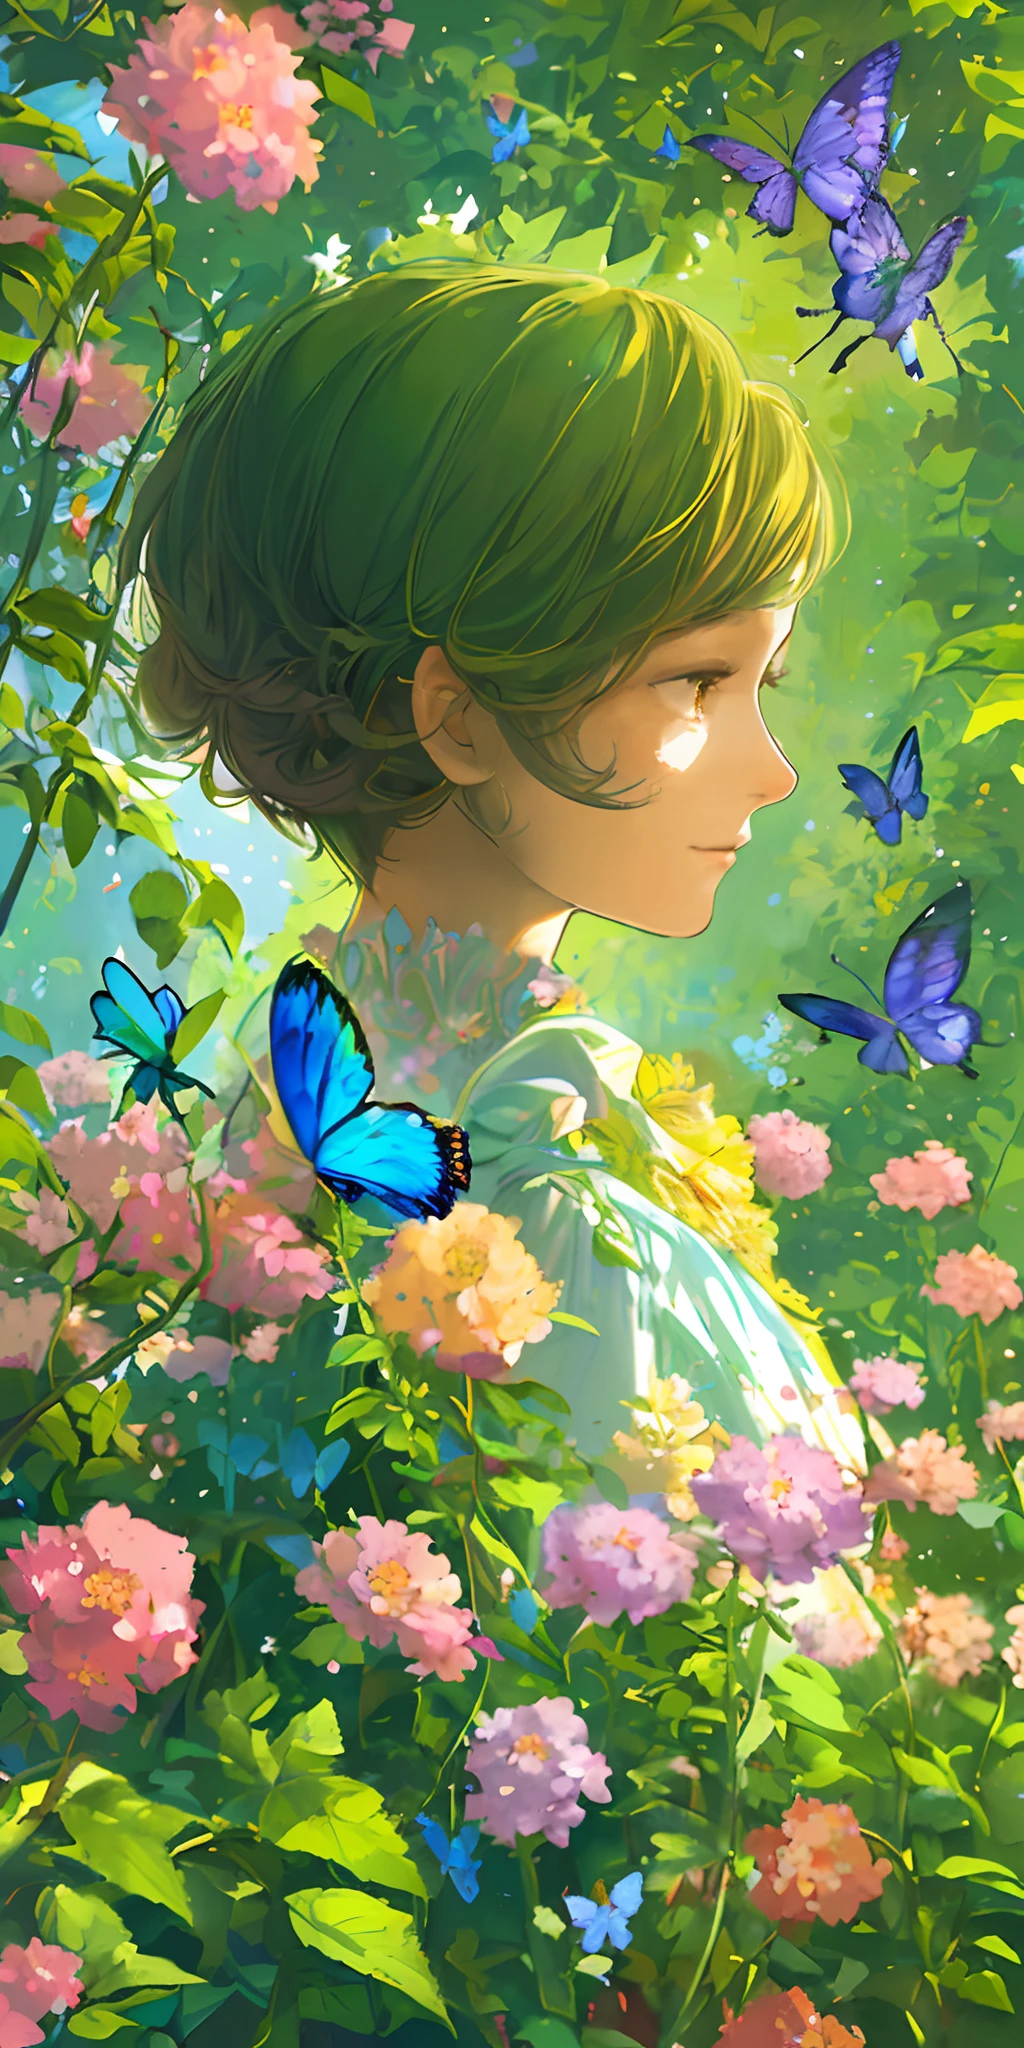 (最好的质量, 杰作, 超现实), 1 美丽精致的女孩肖像, 带着柔和、平和的表情, 背景是一座花园，里面有开花的灌木丛和飞舞的蝴蝶.